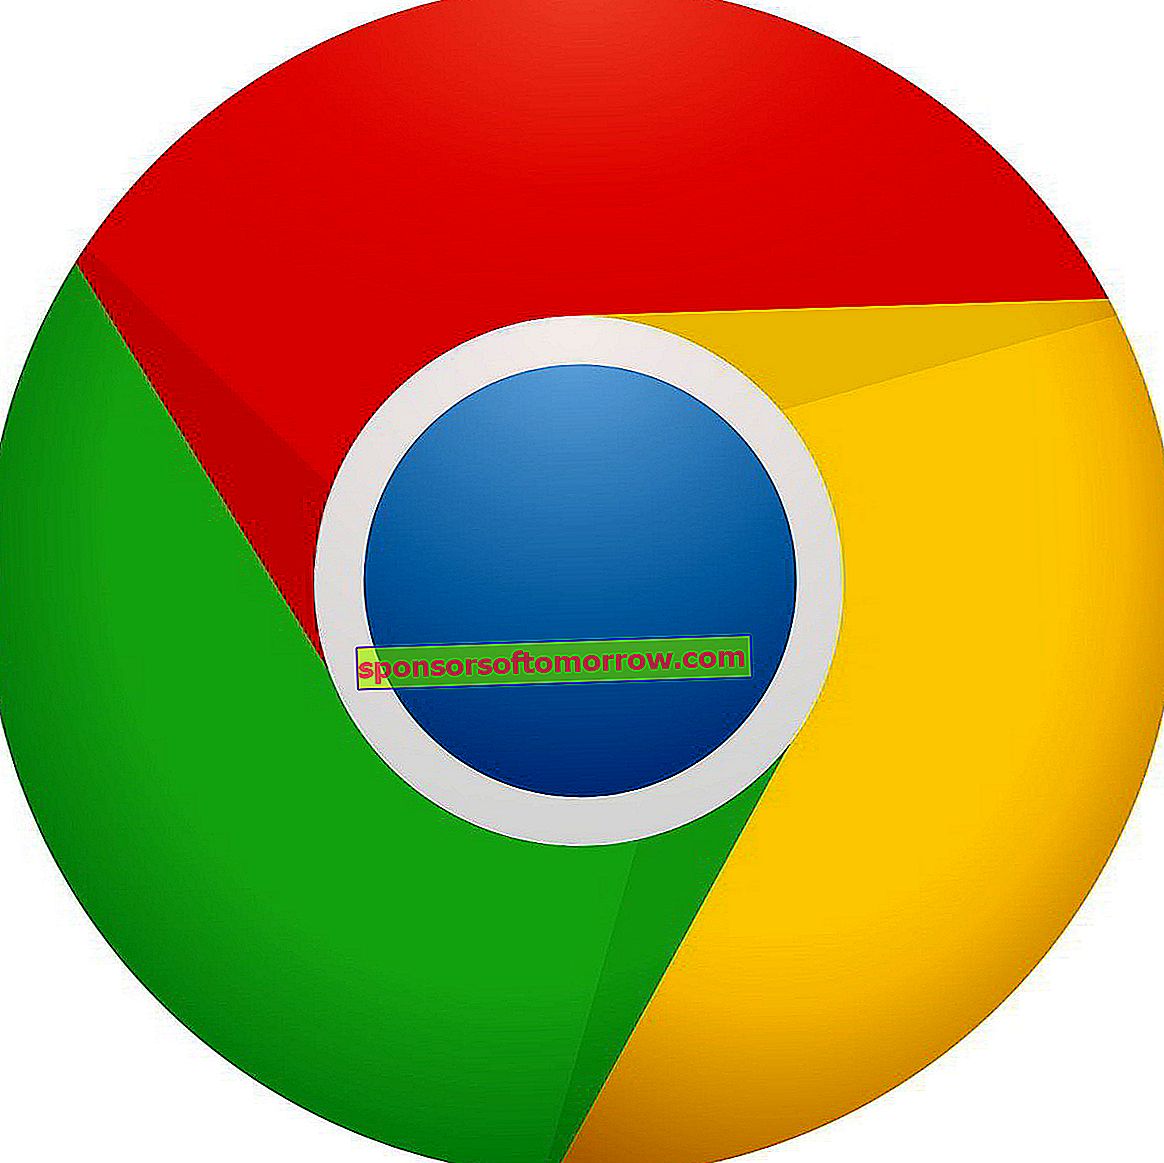 Ainsi, vous pouvez récupérer les favoris Chrome supprimés